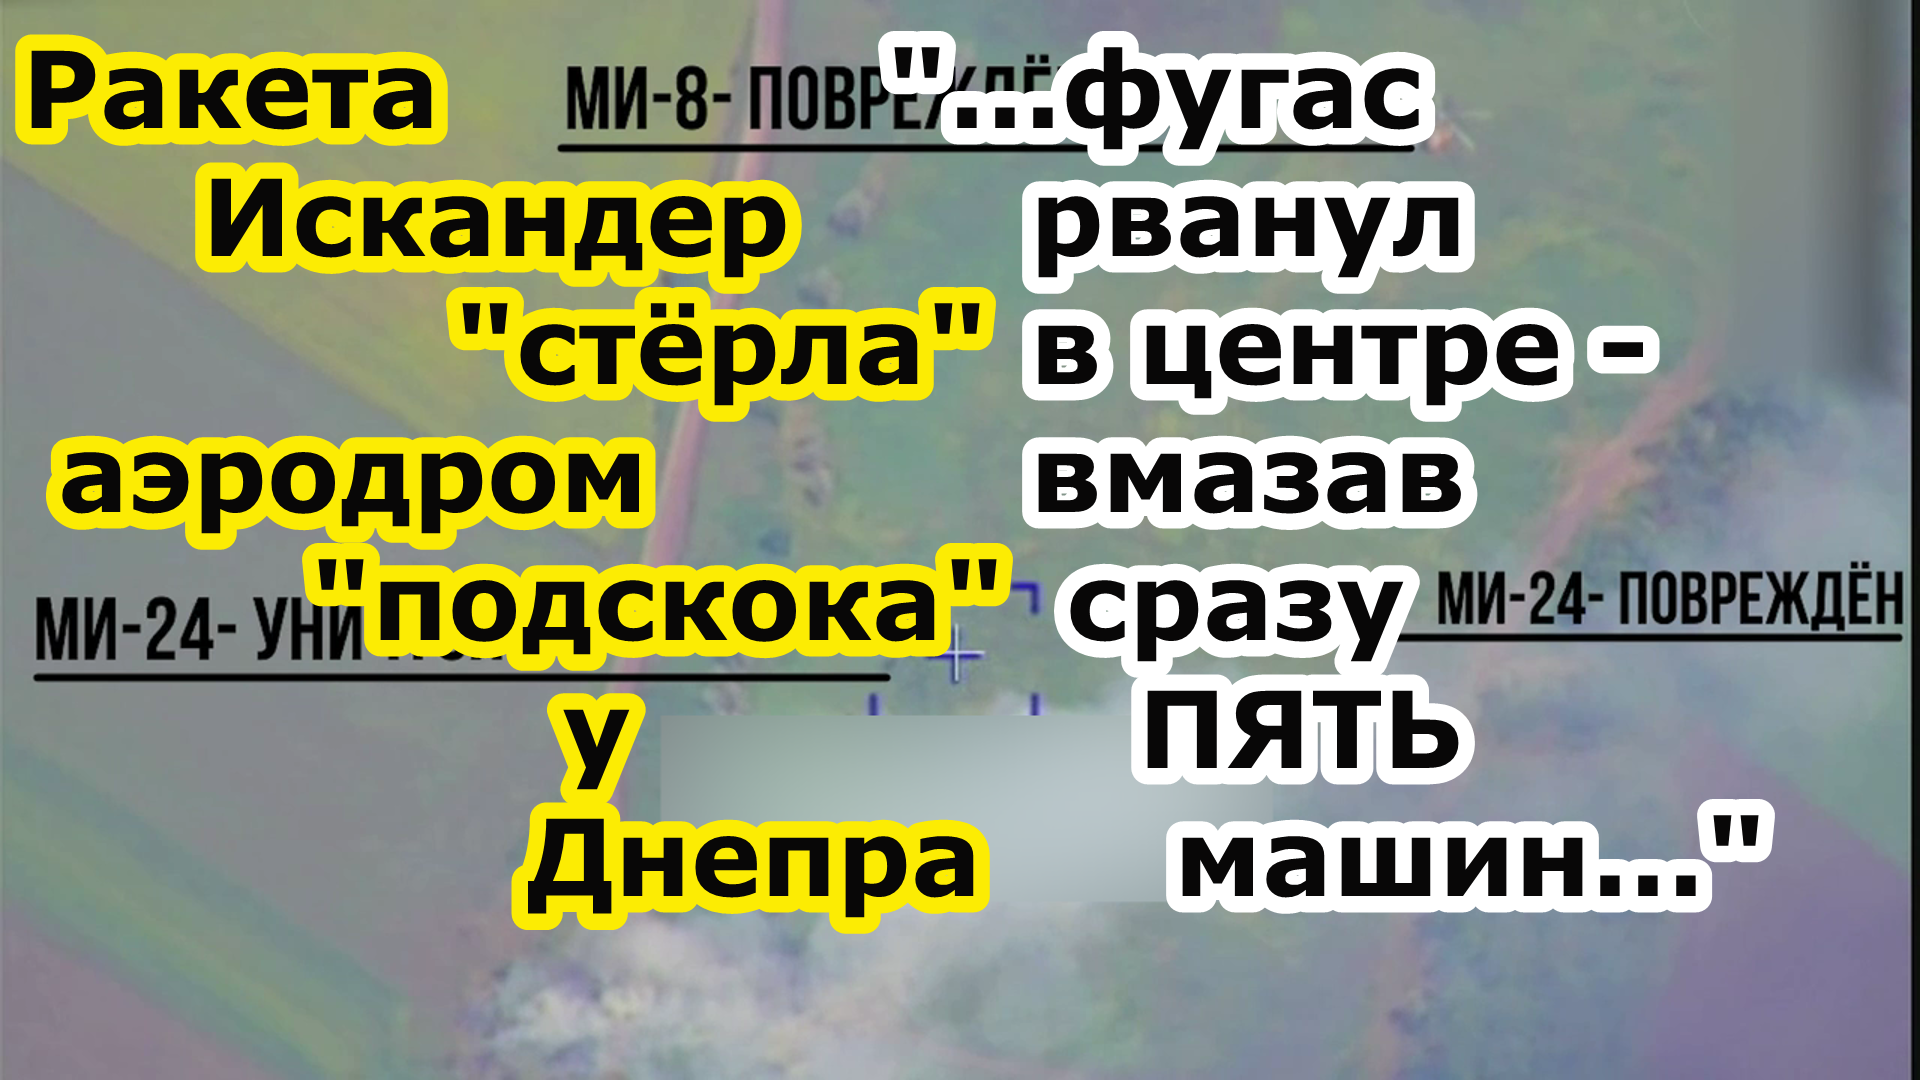 Ракета Искандер грохнула аэродром подскока у нп Манвеловка с вертолетами Ми 24 Ми 8 и АПА с обслугой